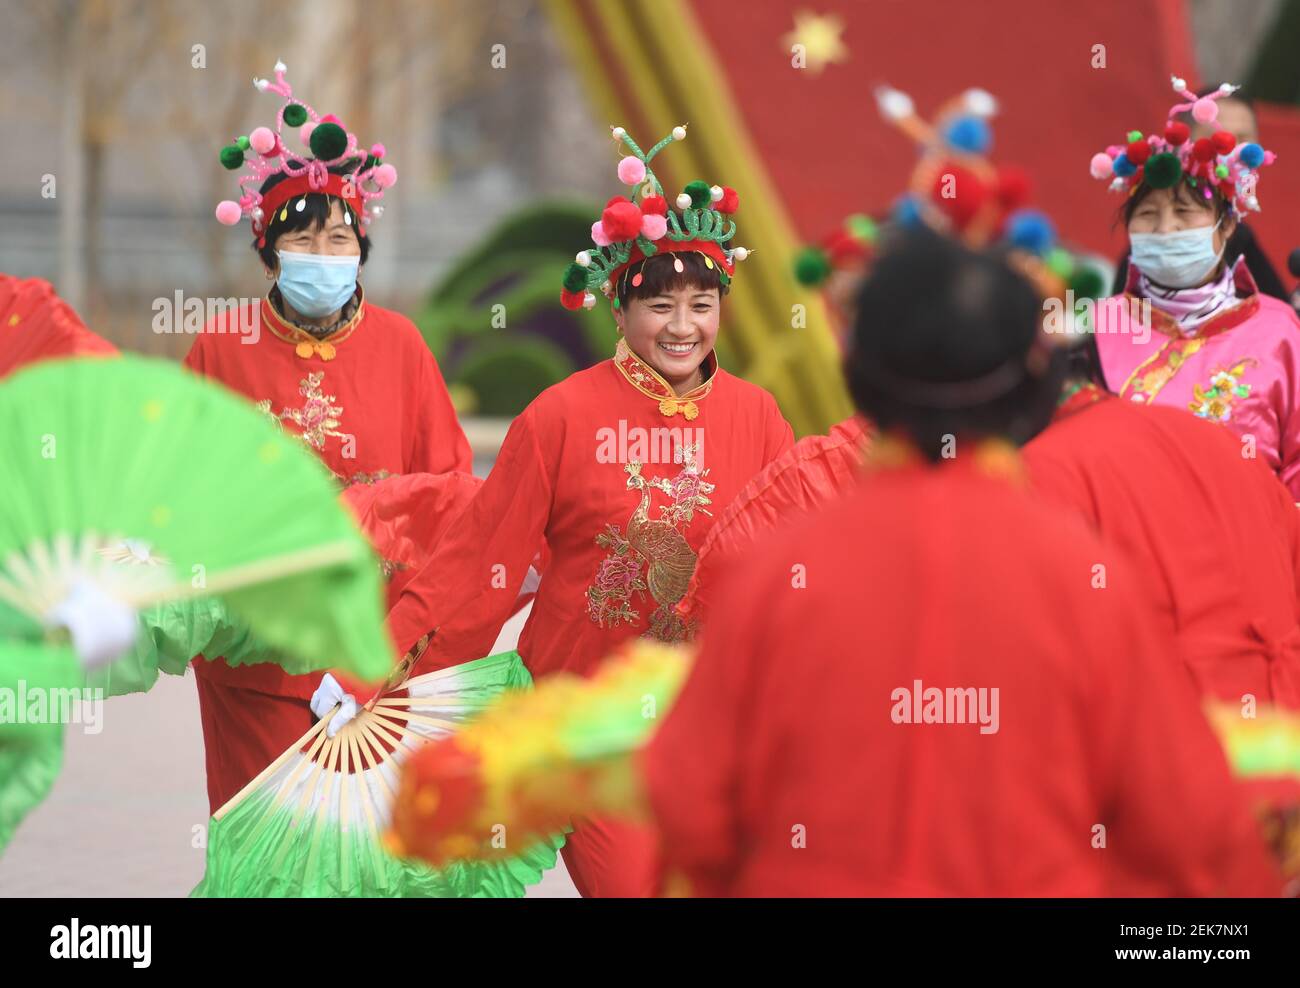 Cangzhou, province chinoise du Hebei. 23 février 2021. Des artistes folkloriques exécutent la danse traditionnelle dans la ville de Jinghe, dans la province de Hebei, dans le nord de la Chine, le 23 février 2021. Diverses activités ont lieu dans toute la Chine pour accueillir le prochain festival des lanternes, qui aura lieu le 26 février de cette année. Credit: Zhu Xudong/Xinhua/Alamy Live News Banque D'Images